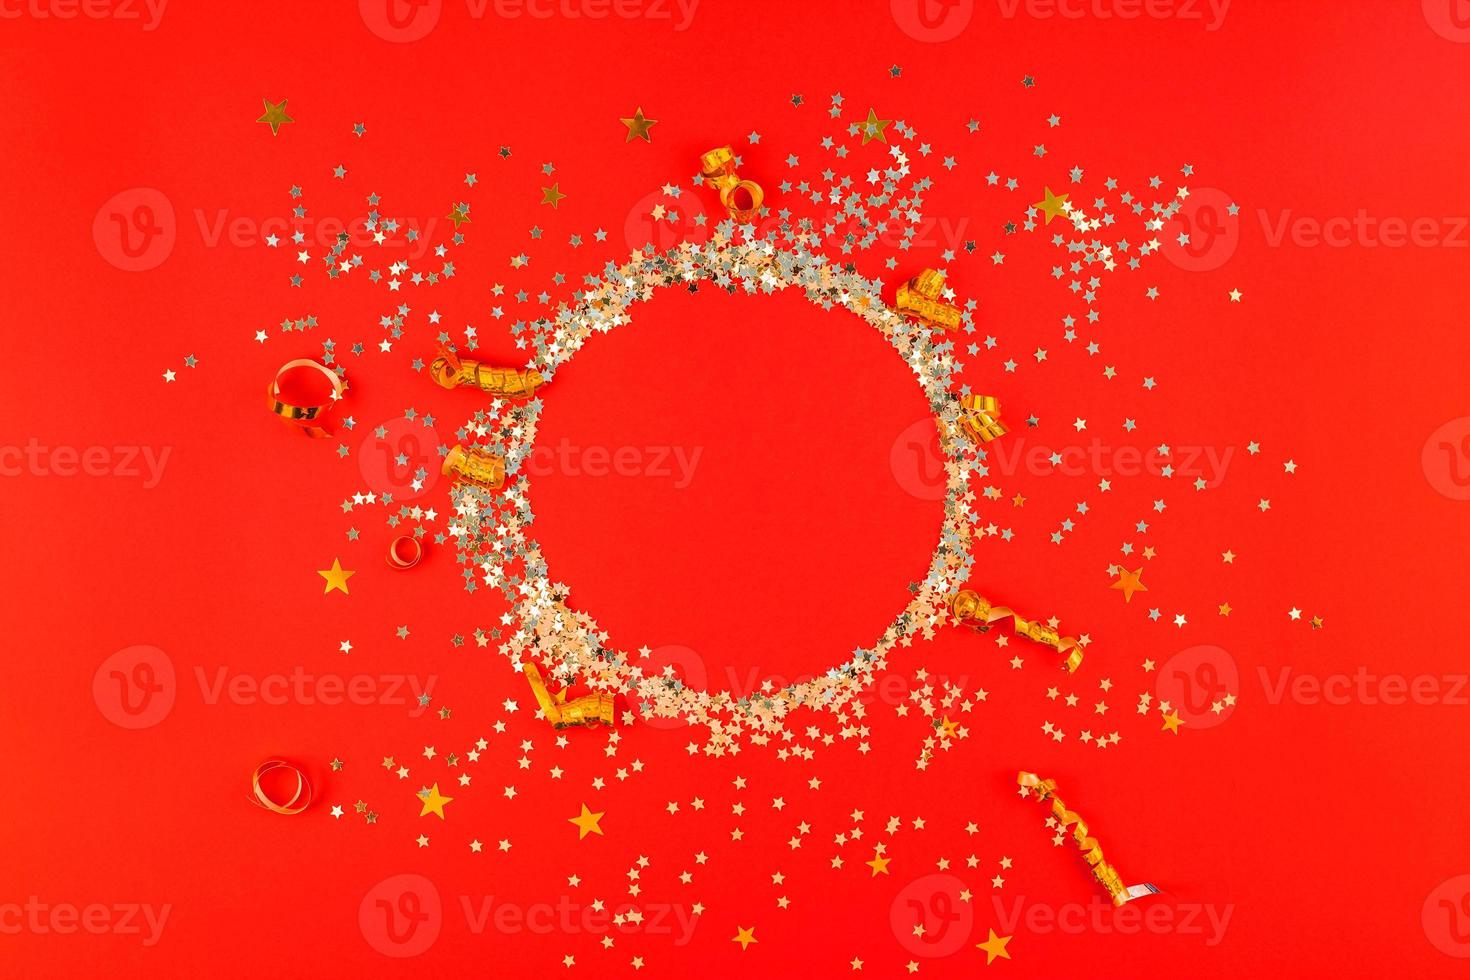 weihnachten goldener runder glitzerrahmenhintergrund foto